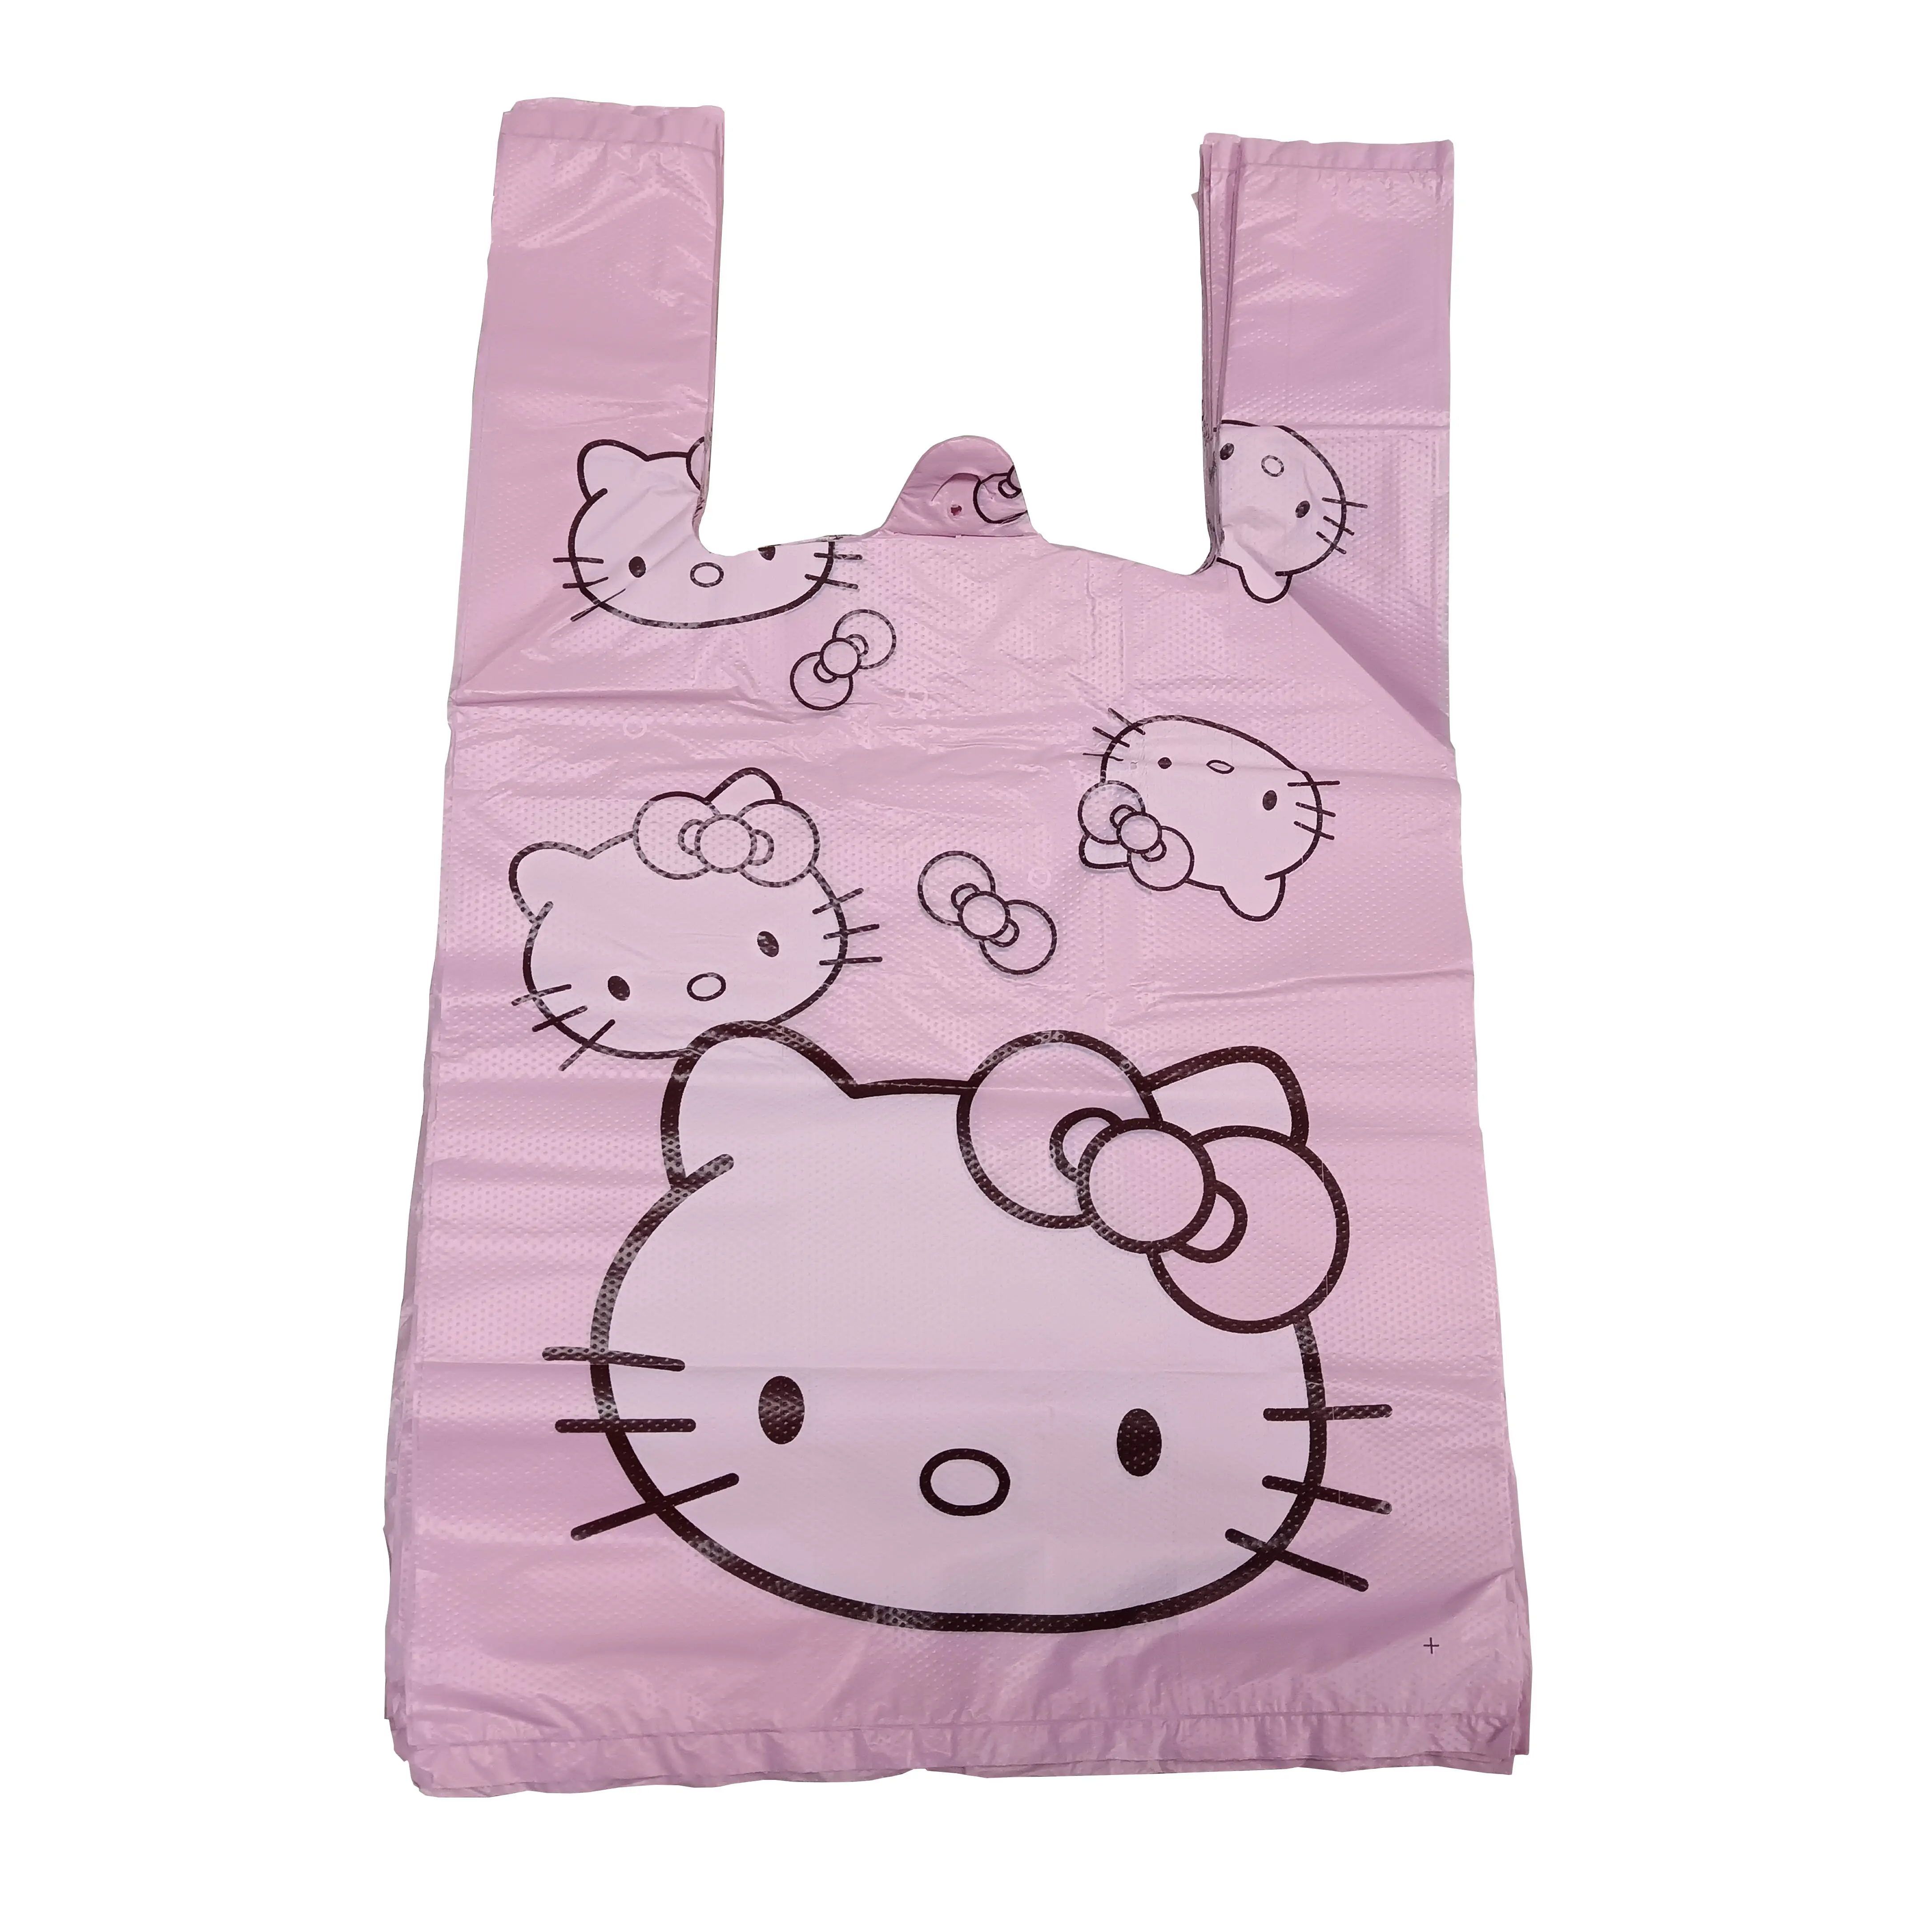 Sacco della spazzatura rosa per uso domestico gilet stampato da cartone animato con stampa comodo sacchetto per la pulizia della cintura della spazzatura